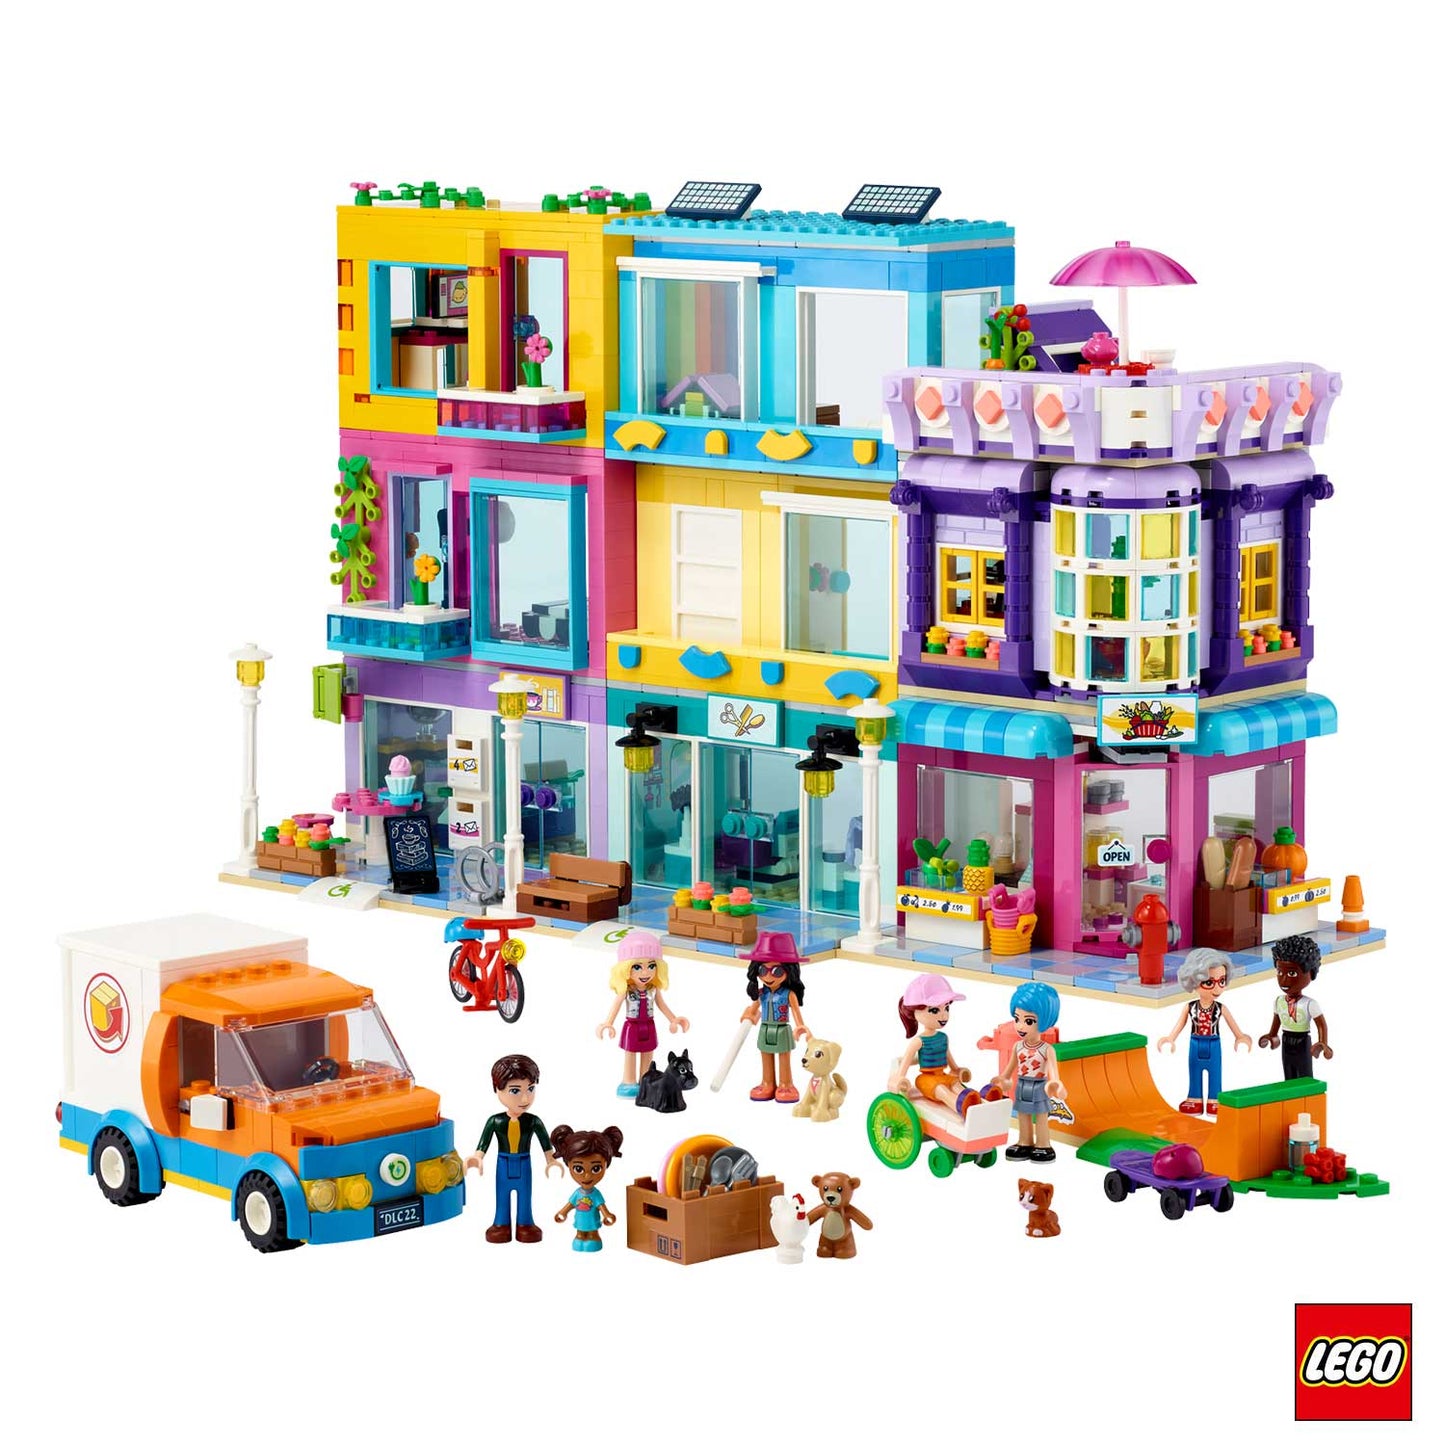 Lego - Friends Edificio Della Strada Principale 41704